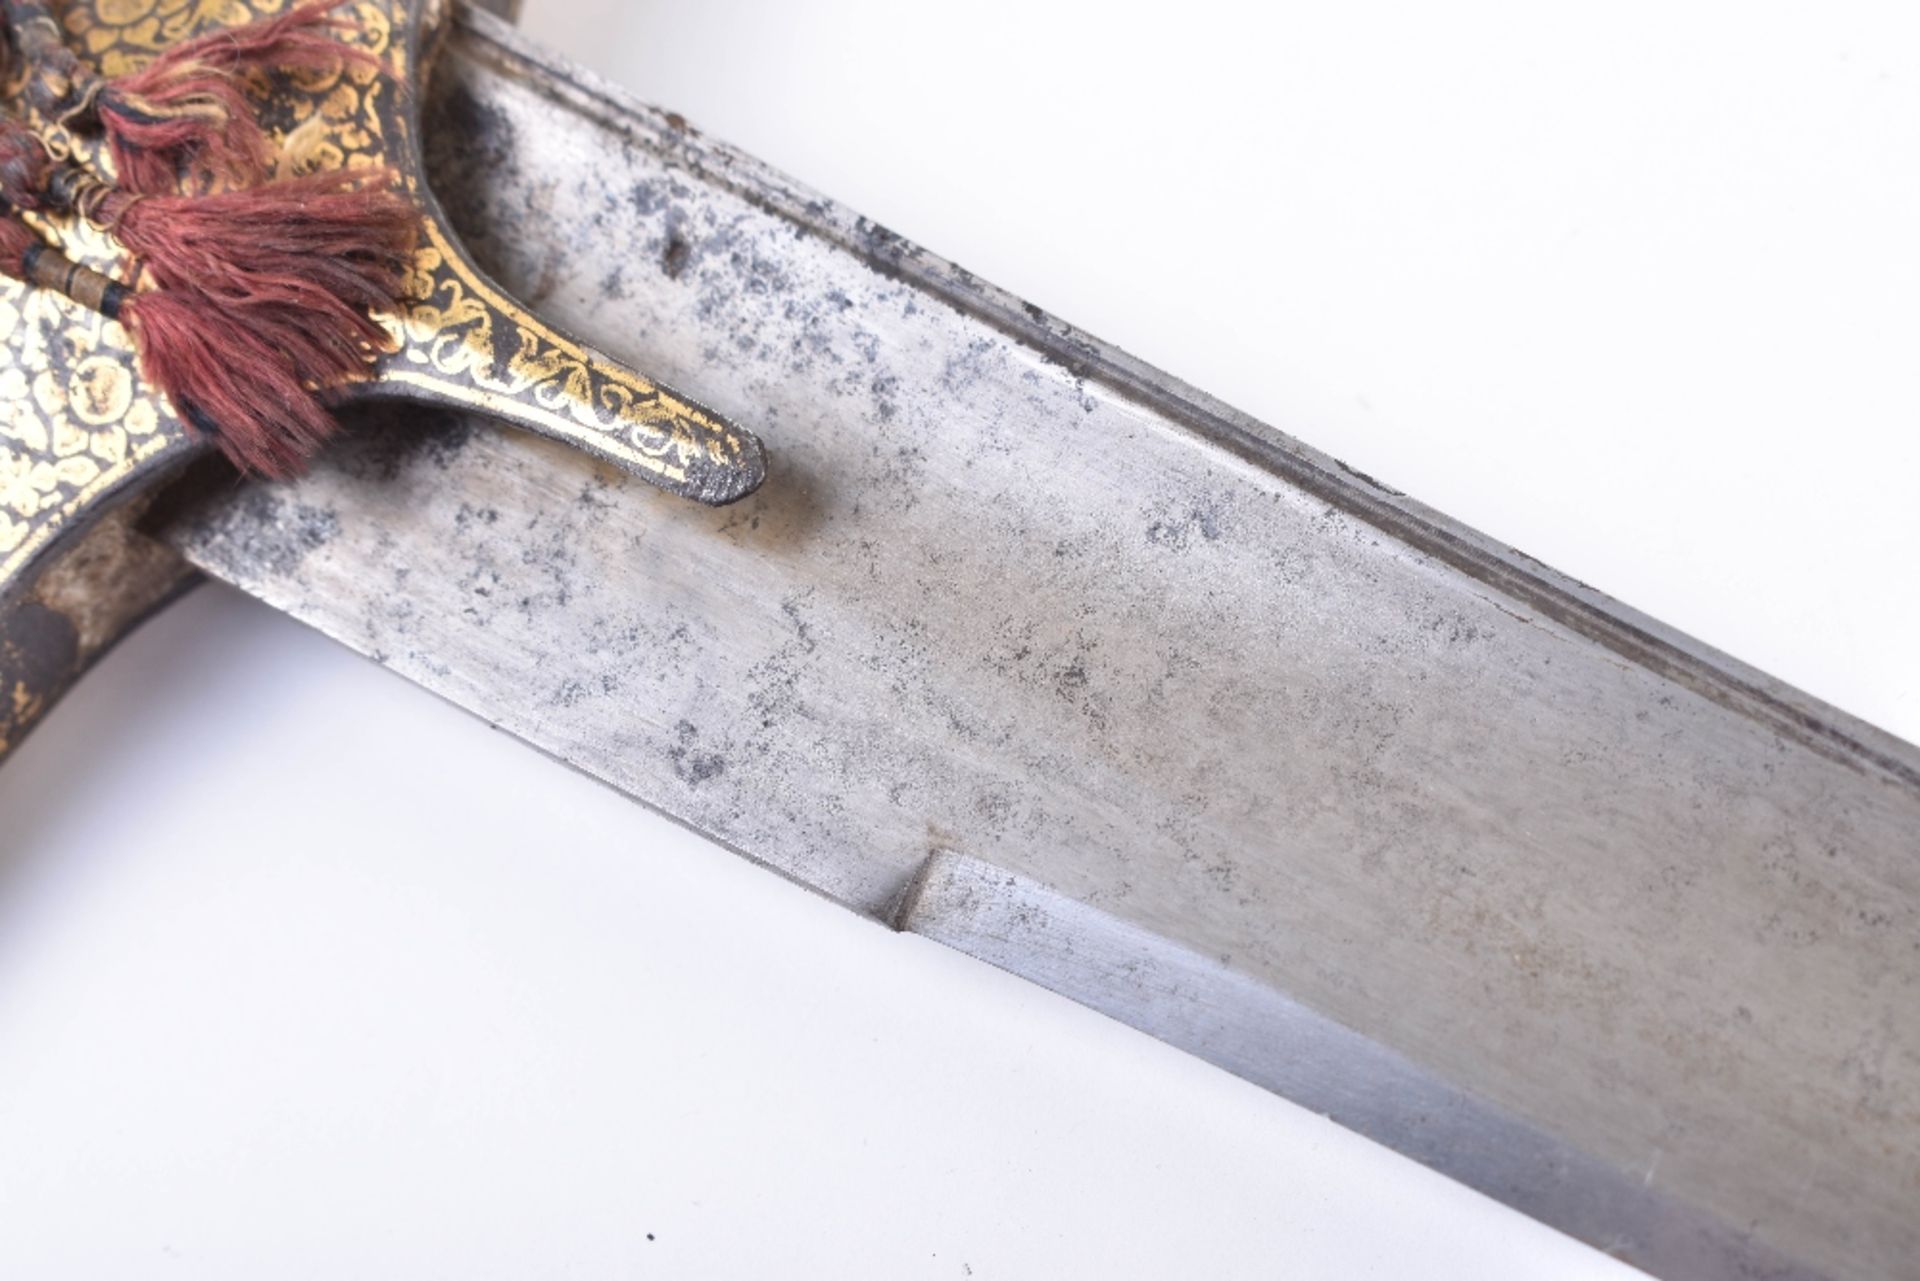 Fine Indian Sword Shamshir - Image 6 of 39